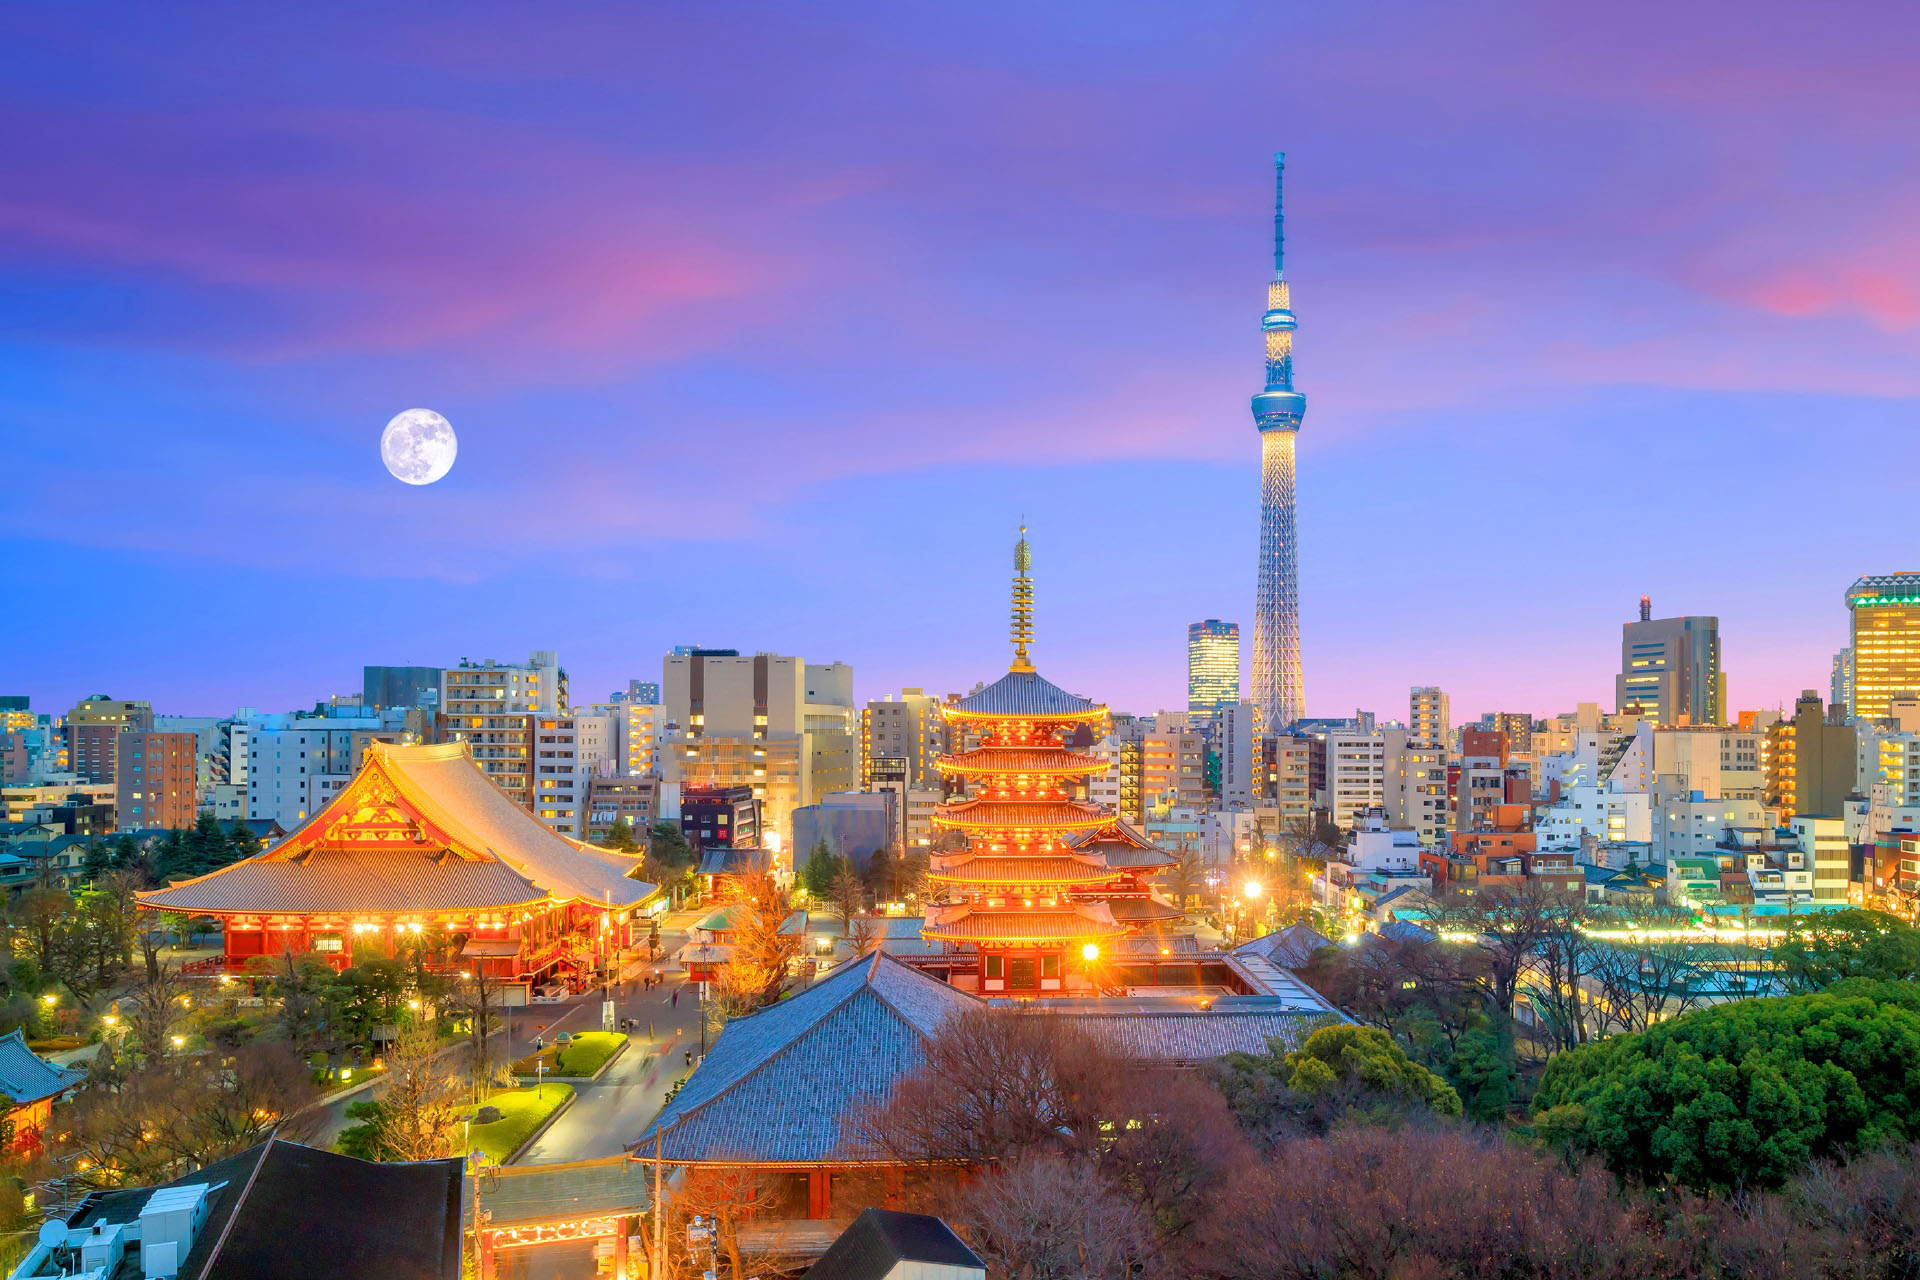 浅草寺と東京スカイツリーと夕暮れの東京のスカイラインの眺め